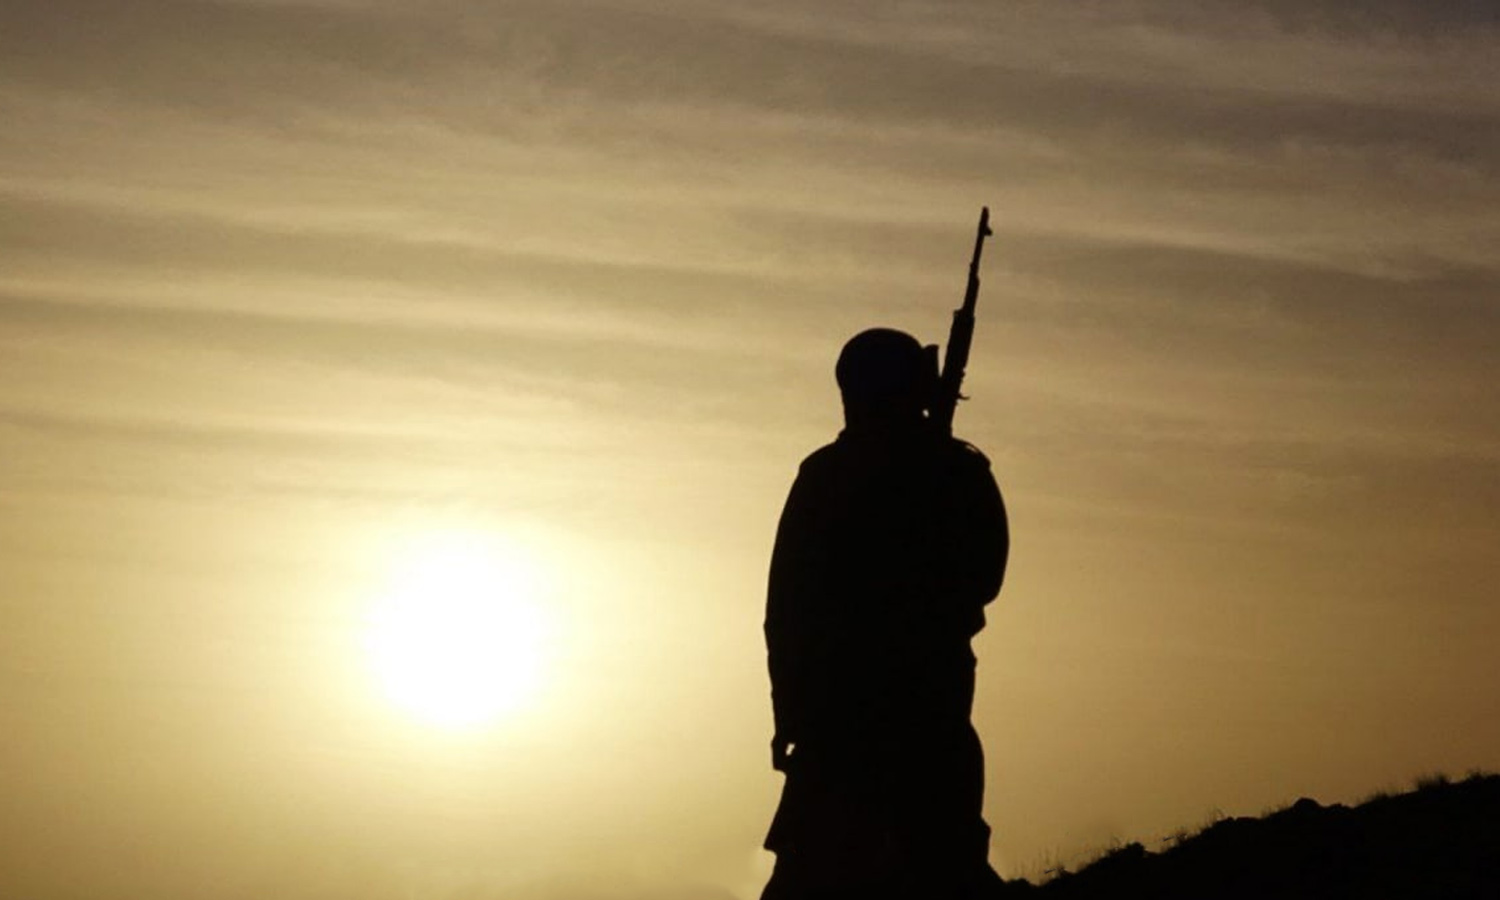 مقاتل بتنظيم "الدولة الإسلامية" في سوريا- نيسان 2022 (معرف التنظيم على تيلجرام)